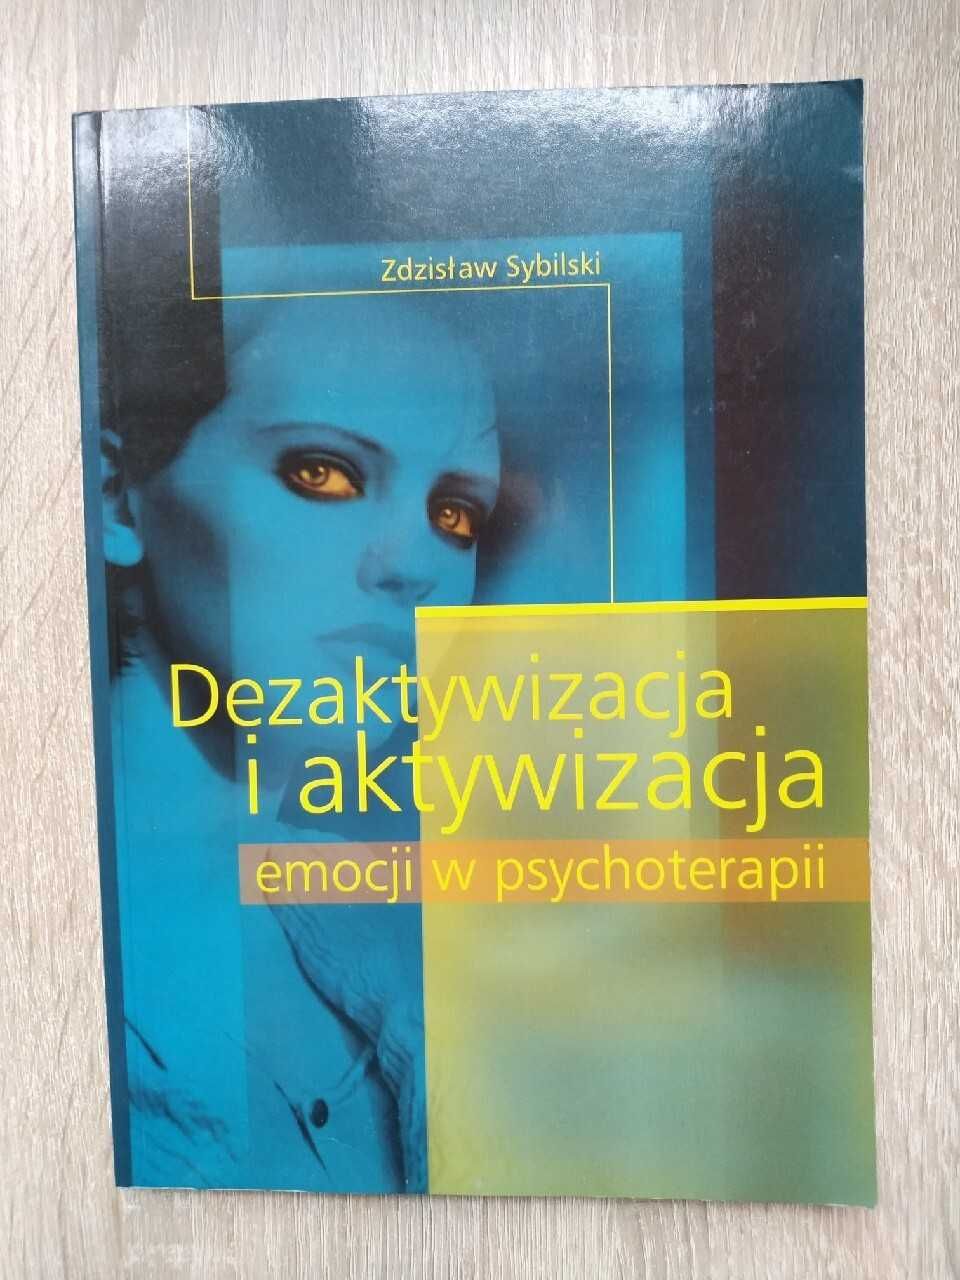 Dezaktywizacja i aktywizacja emocji w psychoterapii, Zdzisław Sybilski